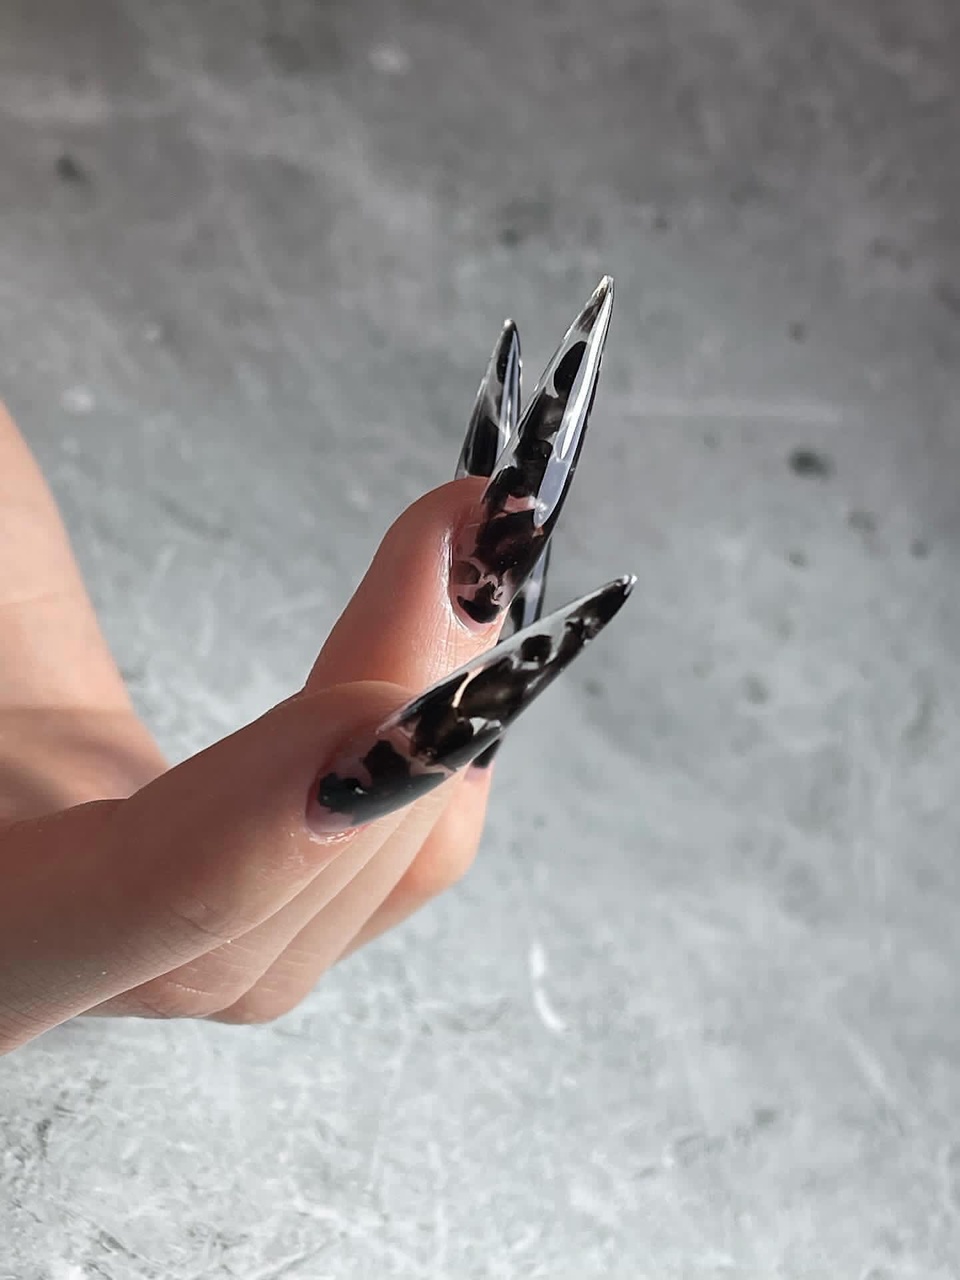 Моделирование ногтей гелем - 1 900 ₽, заказать онлайн.